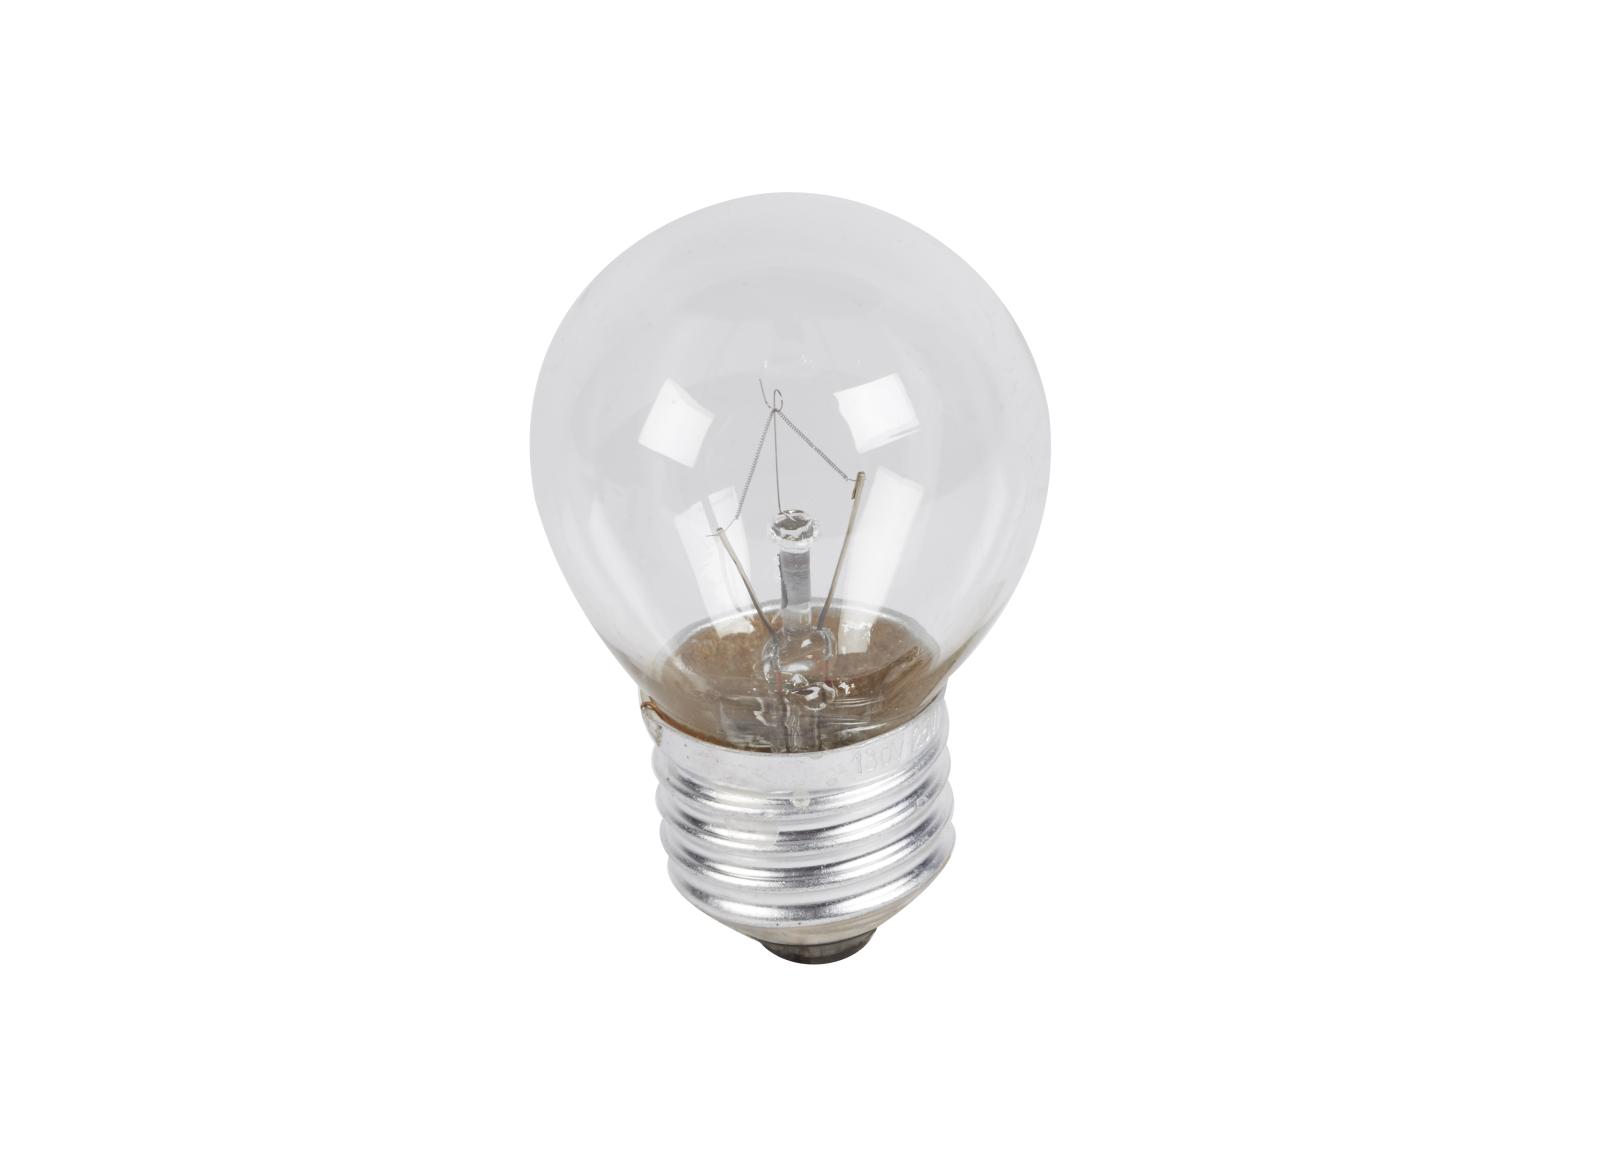 Lampe E27 127V 25W pour Luminaire pour Sources Centrales LSC d'évacuation type métal-verre réference 210000